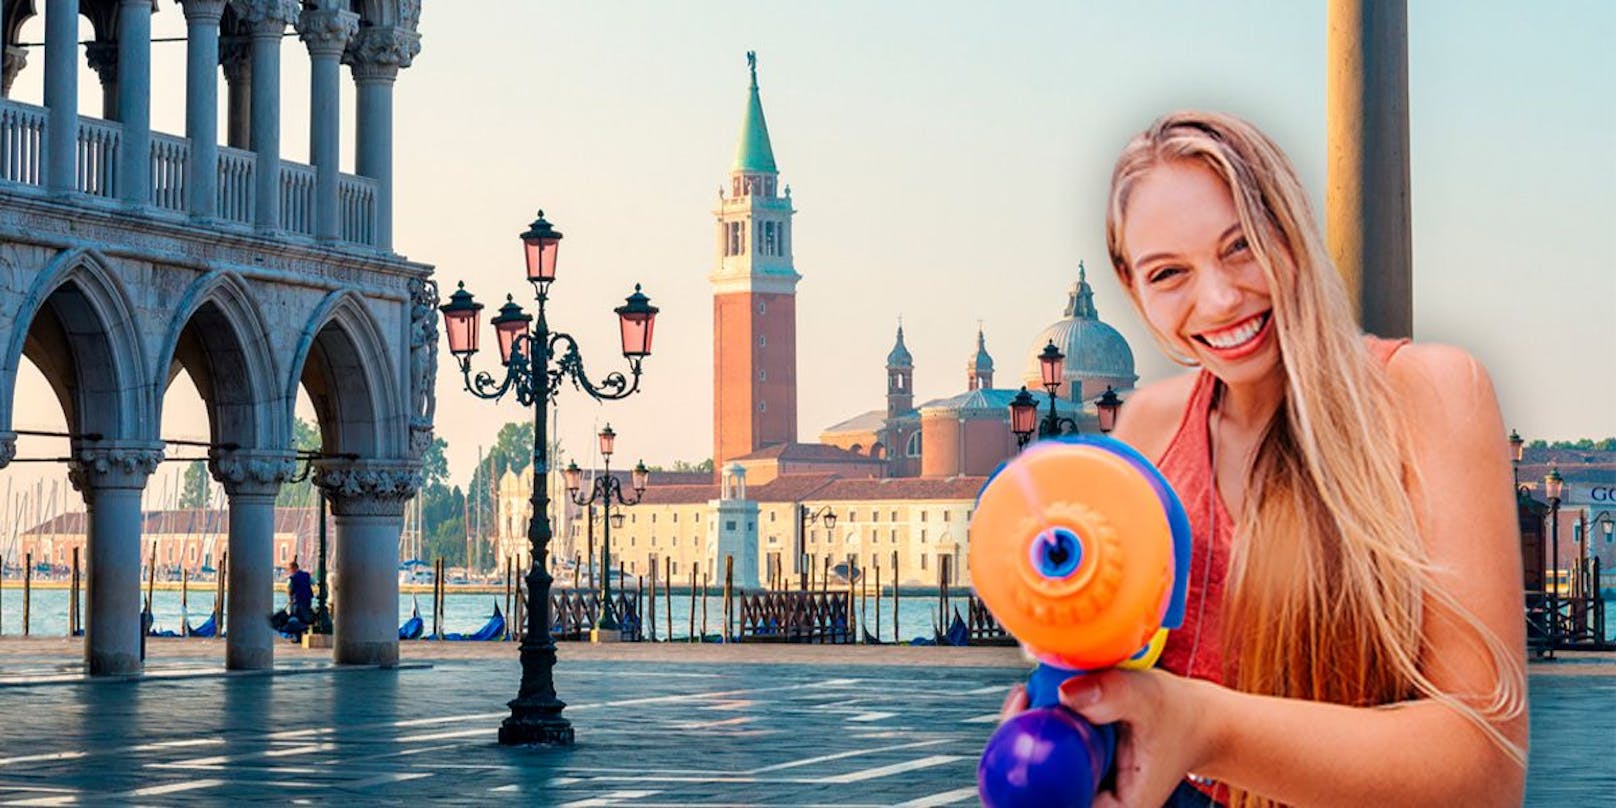 Venezianische Hotels hoffen mit den Wasserpistolen eine Wirkung zu erzielen.